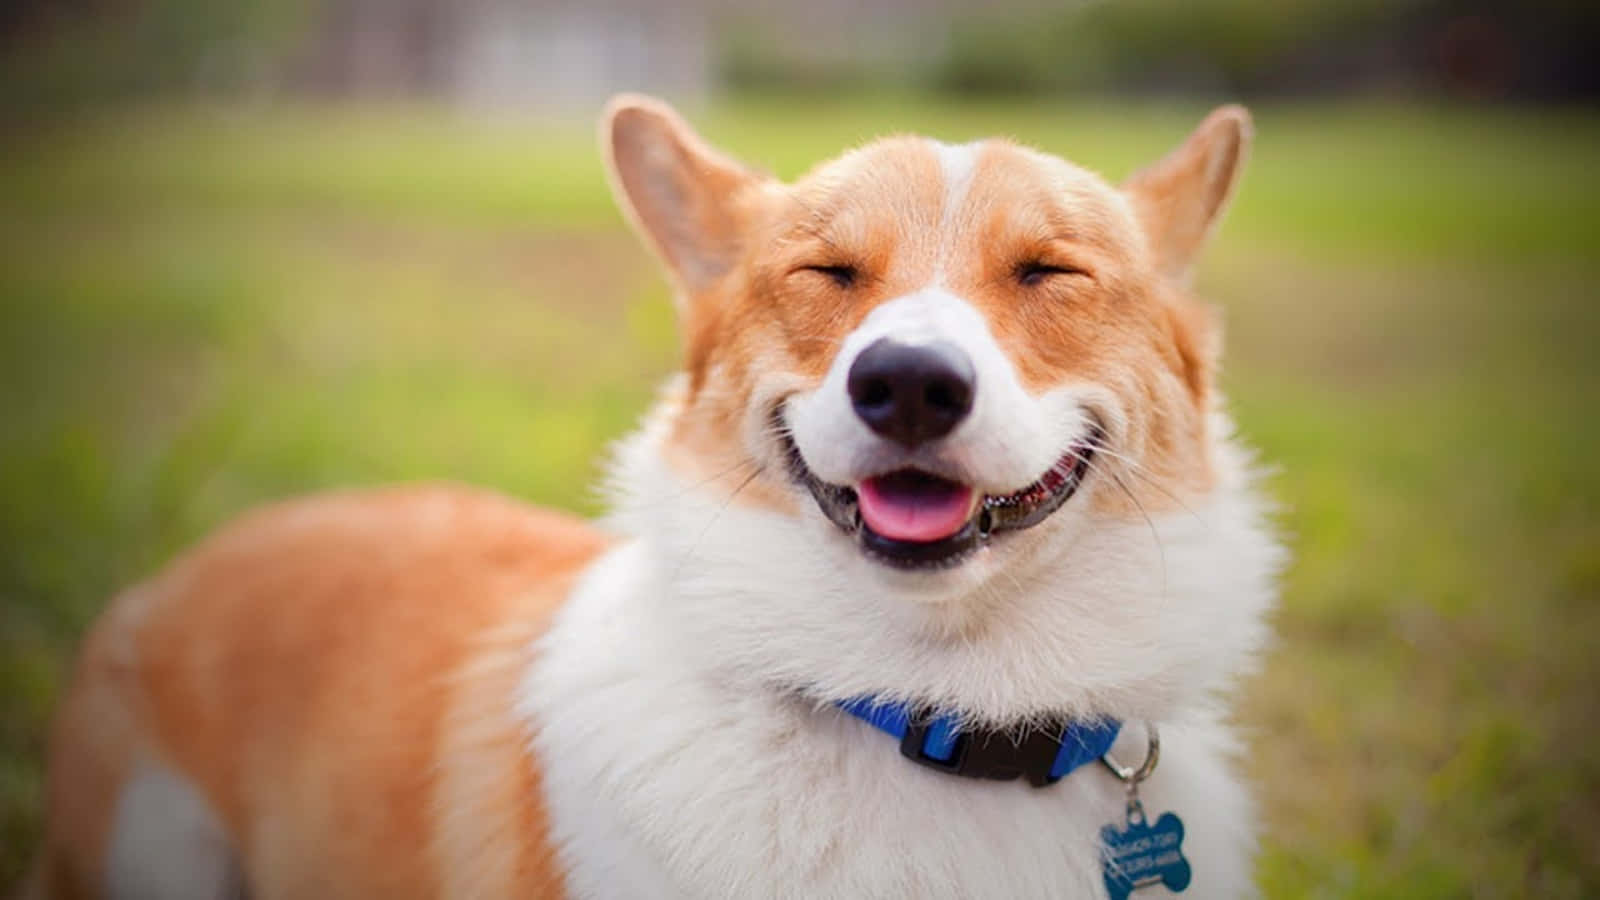 Corgi Dog Smiling Picture